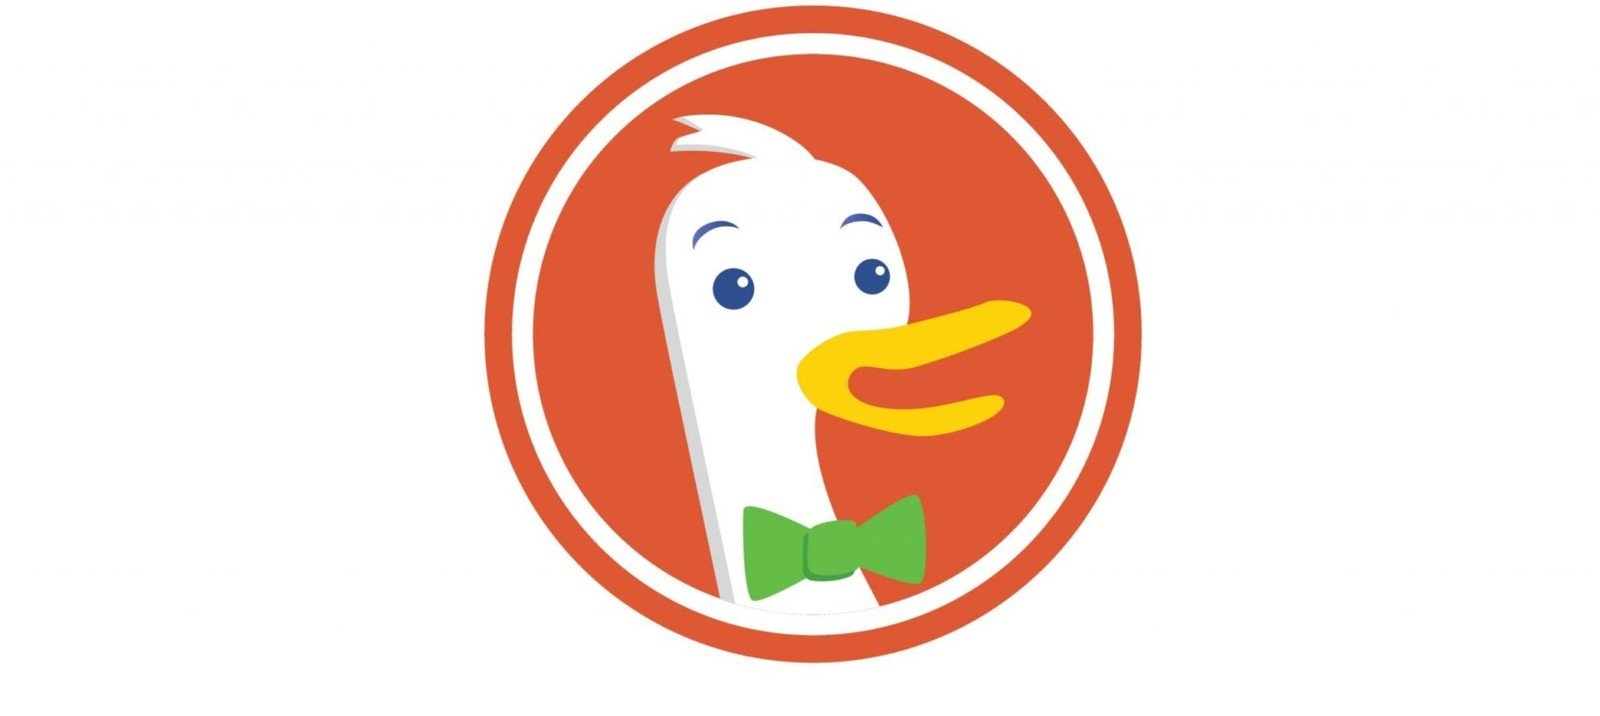 DuckDuckGo idzie jak burza. DuckAssist ma być twoim asystentem – inteligentnym, ale bezpiecznym